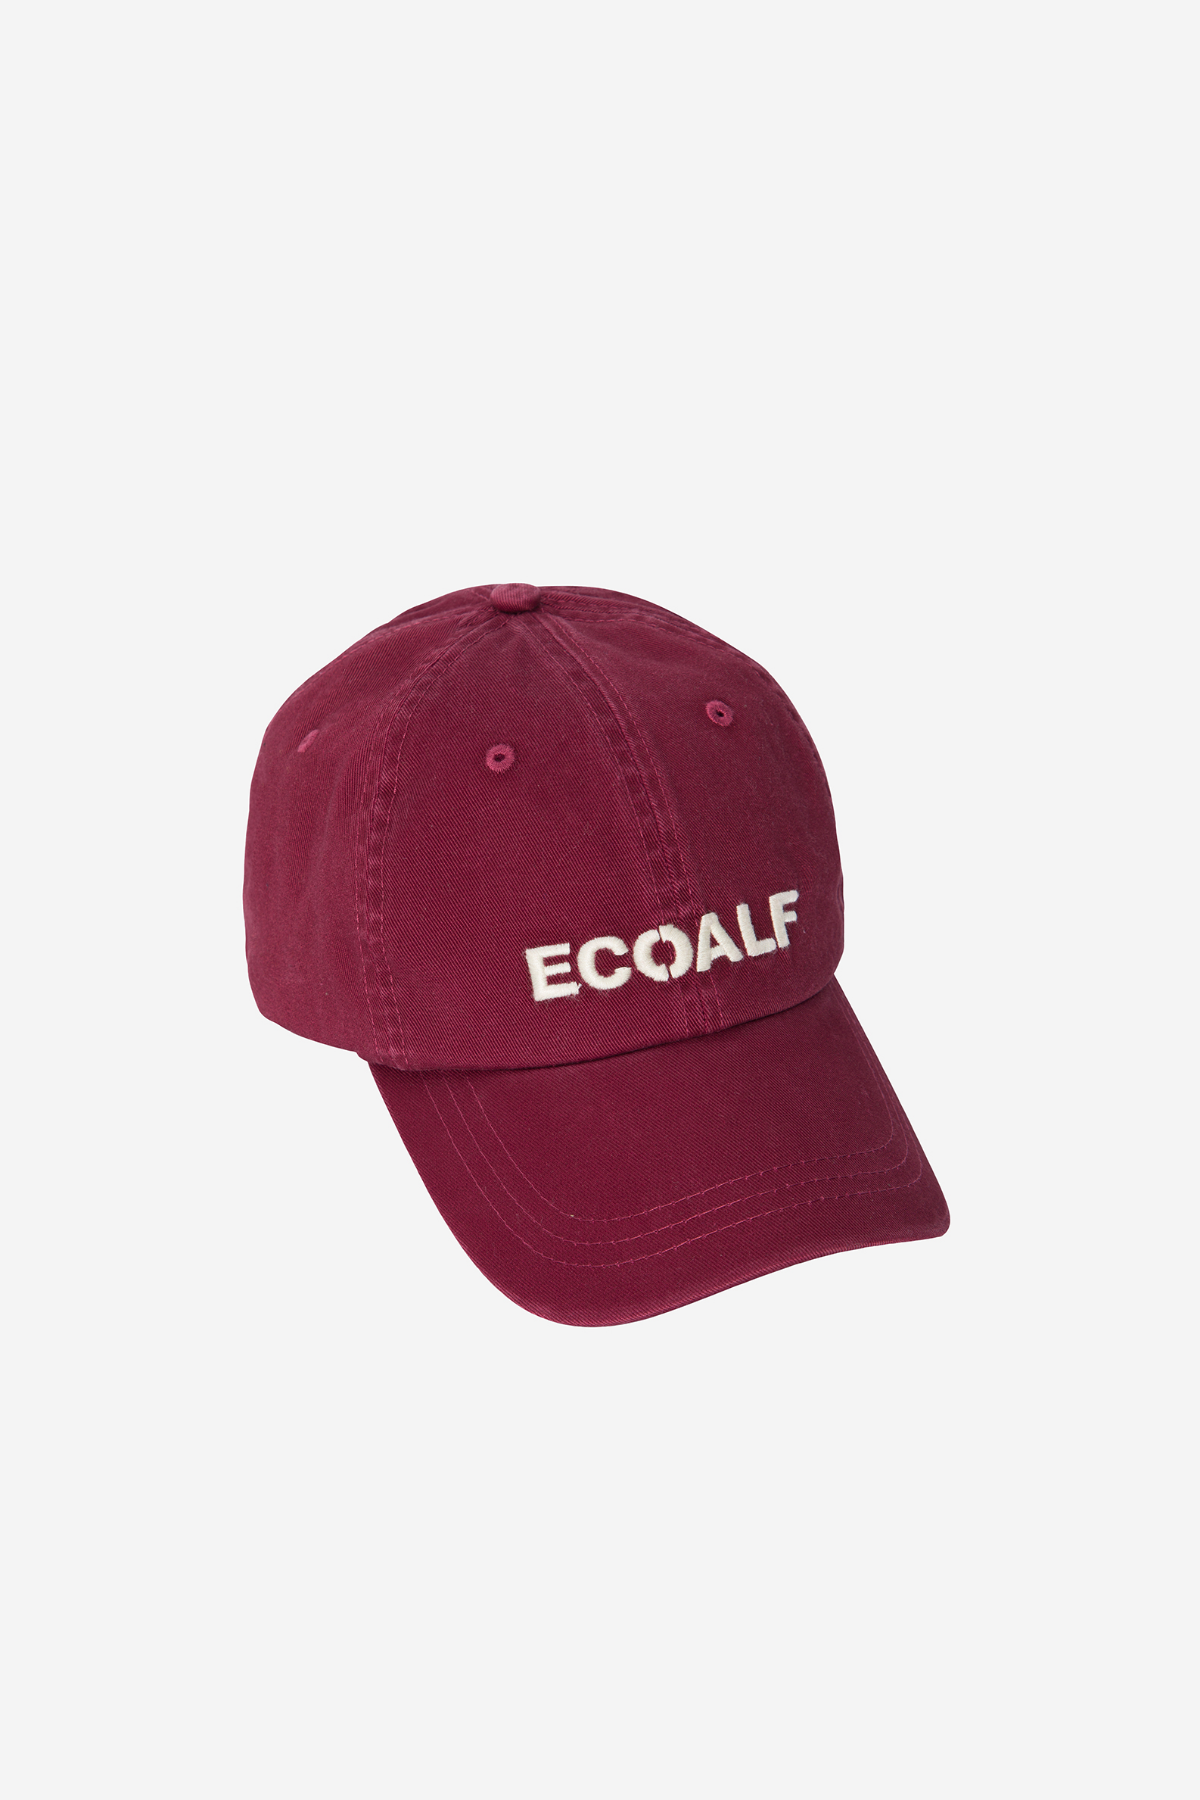 ECOALF venta de gorras para mujer | Todos los estilos